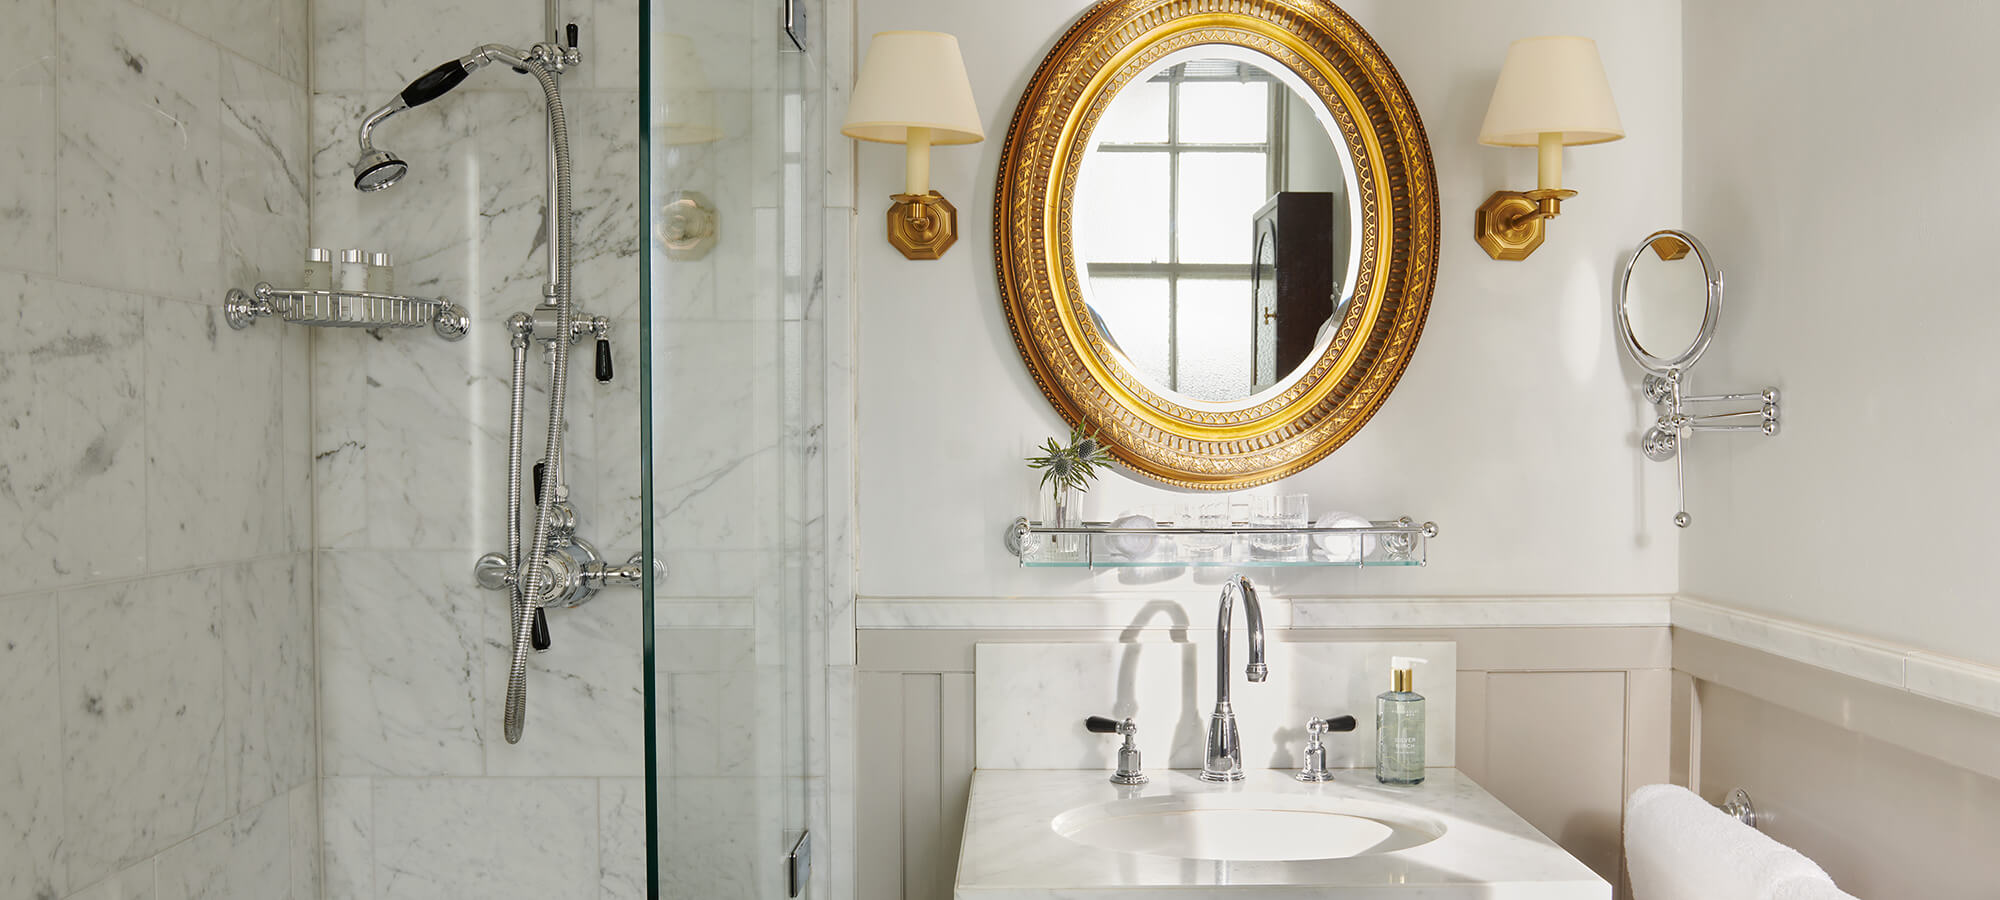 Großer goldener Spiegel über einem weißen Porzellanwaschbecken in einem Country-Zimmer